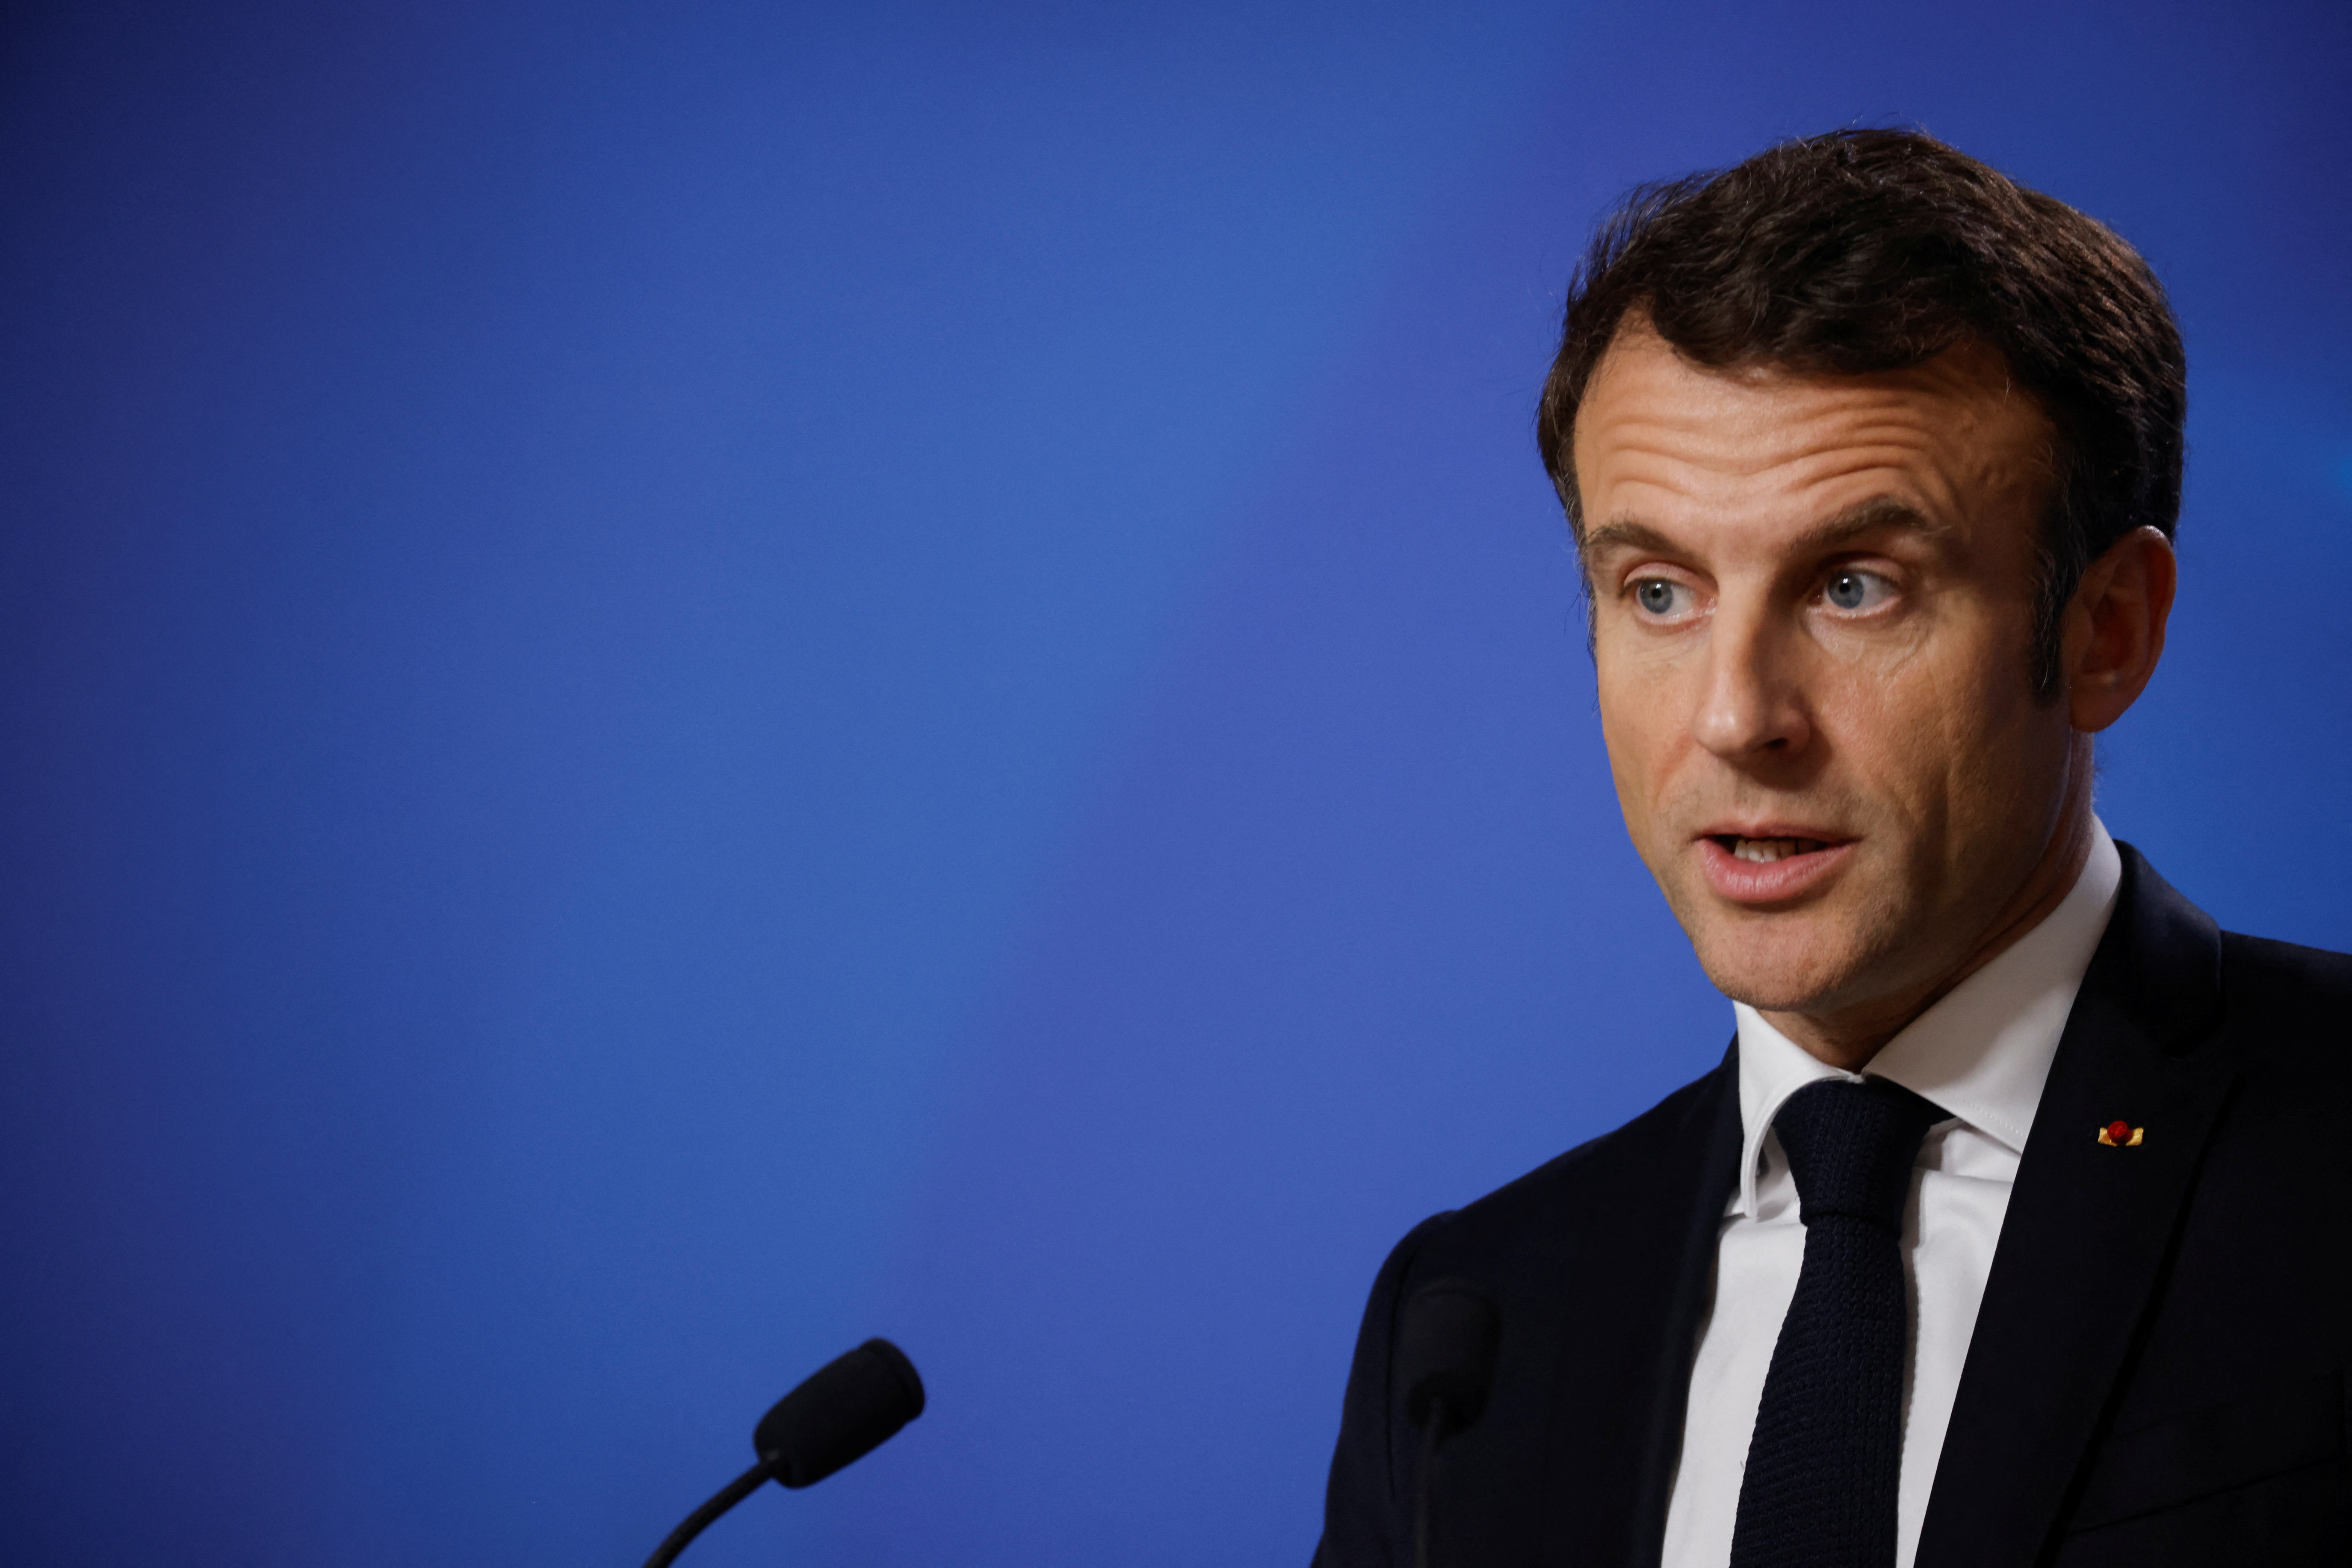 Sommet pour un pacte financier mondial : Emmanuel Macron appelle à soutenir les pays pauvres